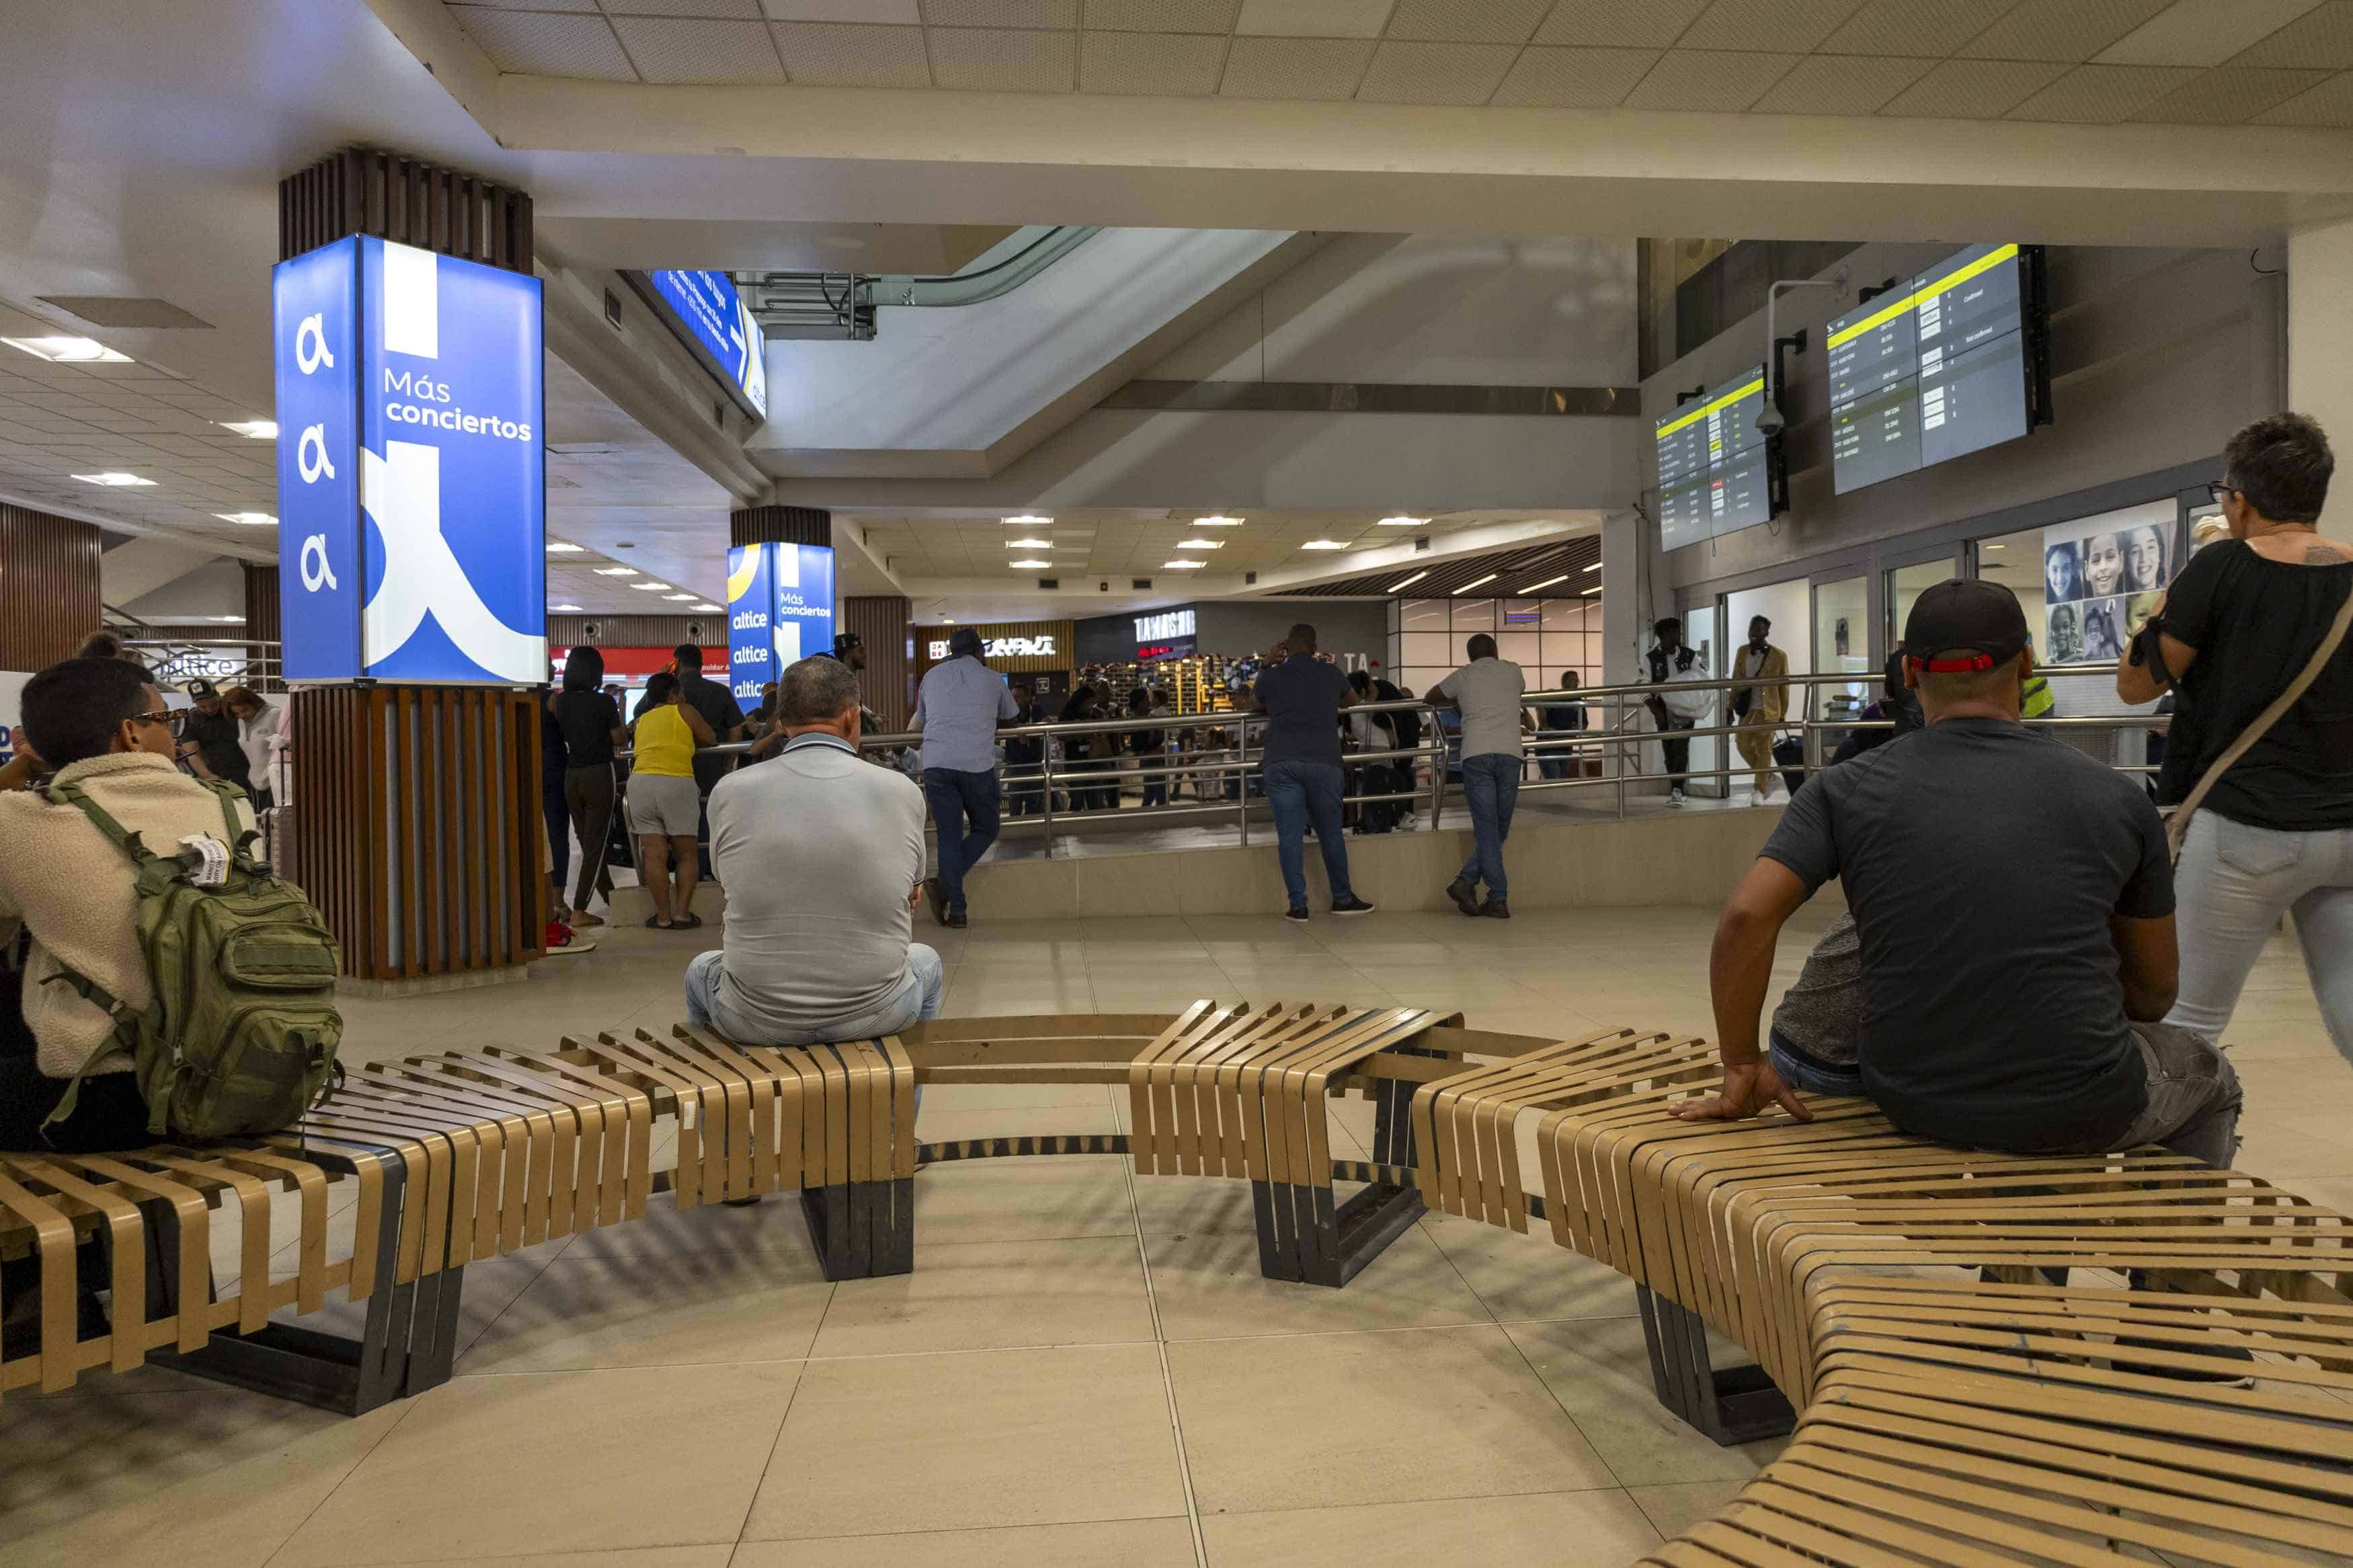 Asiento de espera con barras rotas en el primer nivel del aeropuerto.